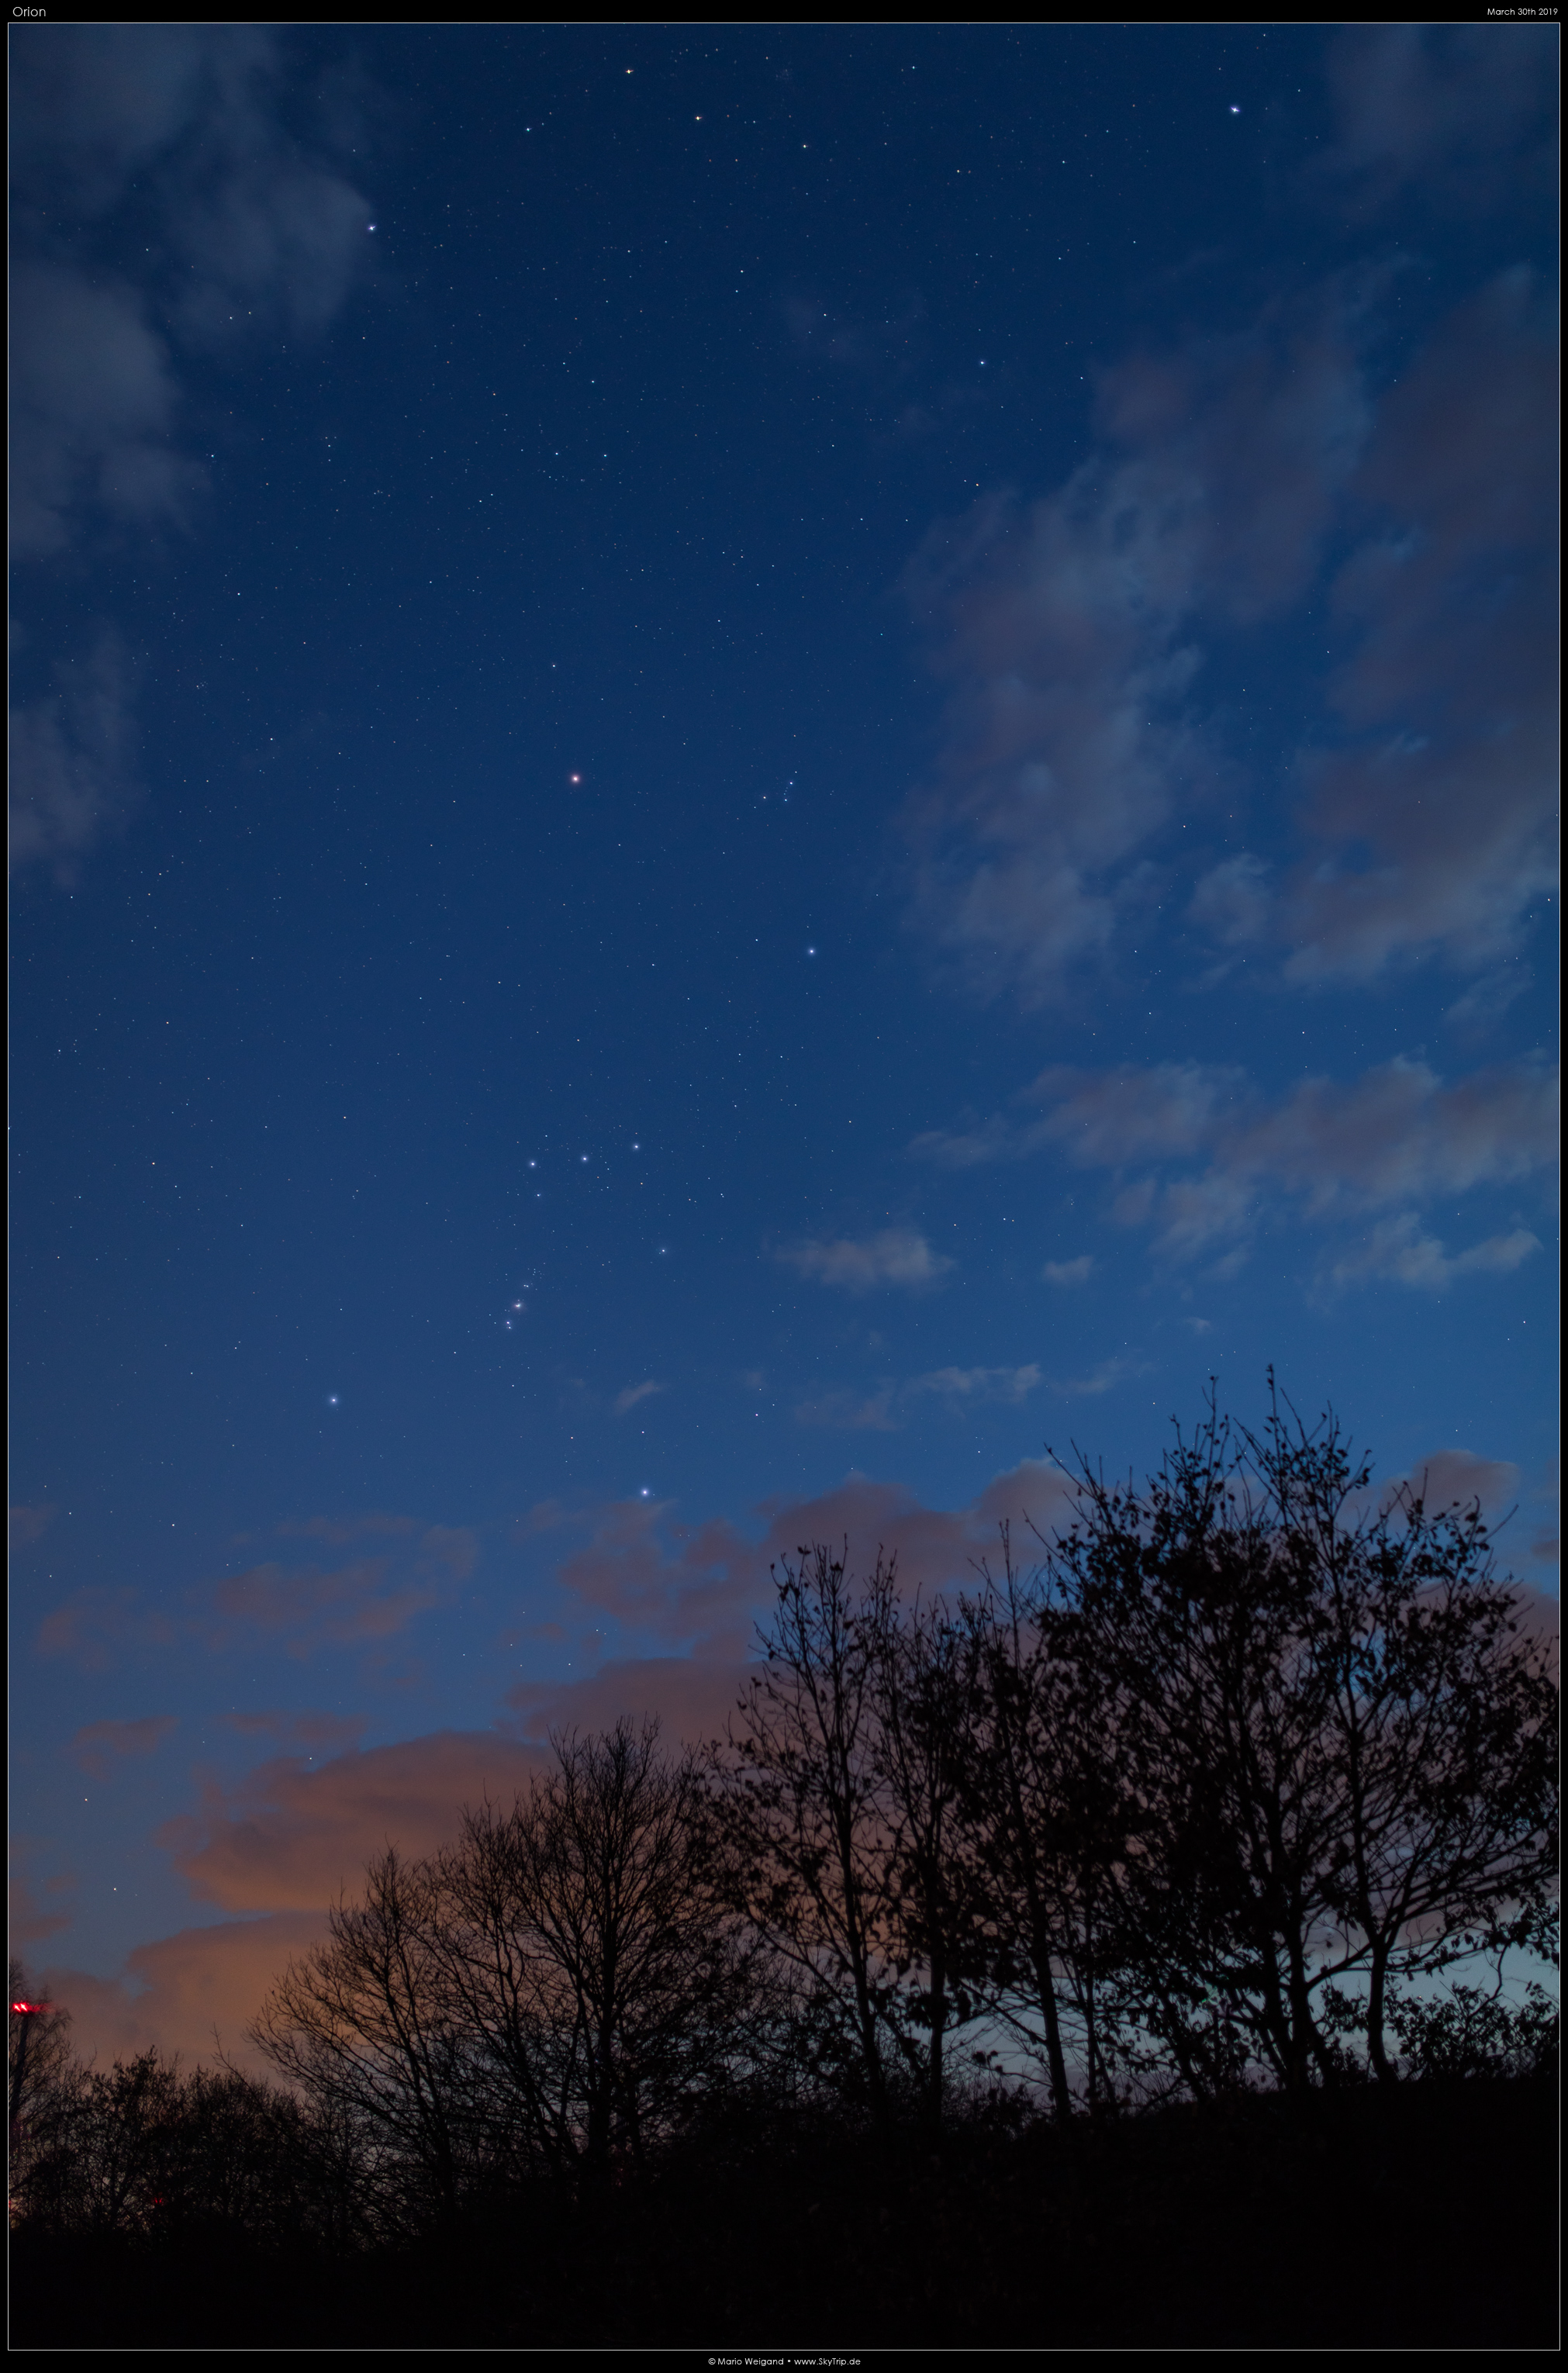 Sternbild Orion am Frühlingshimmel